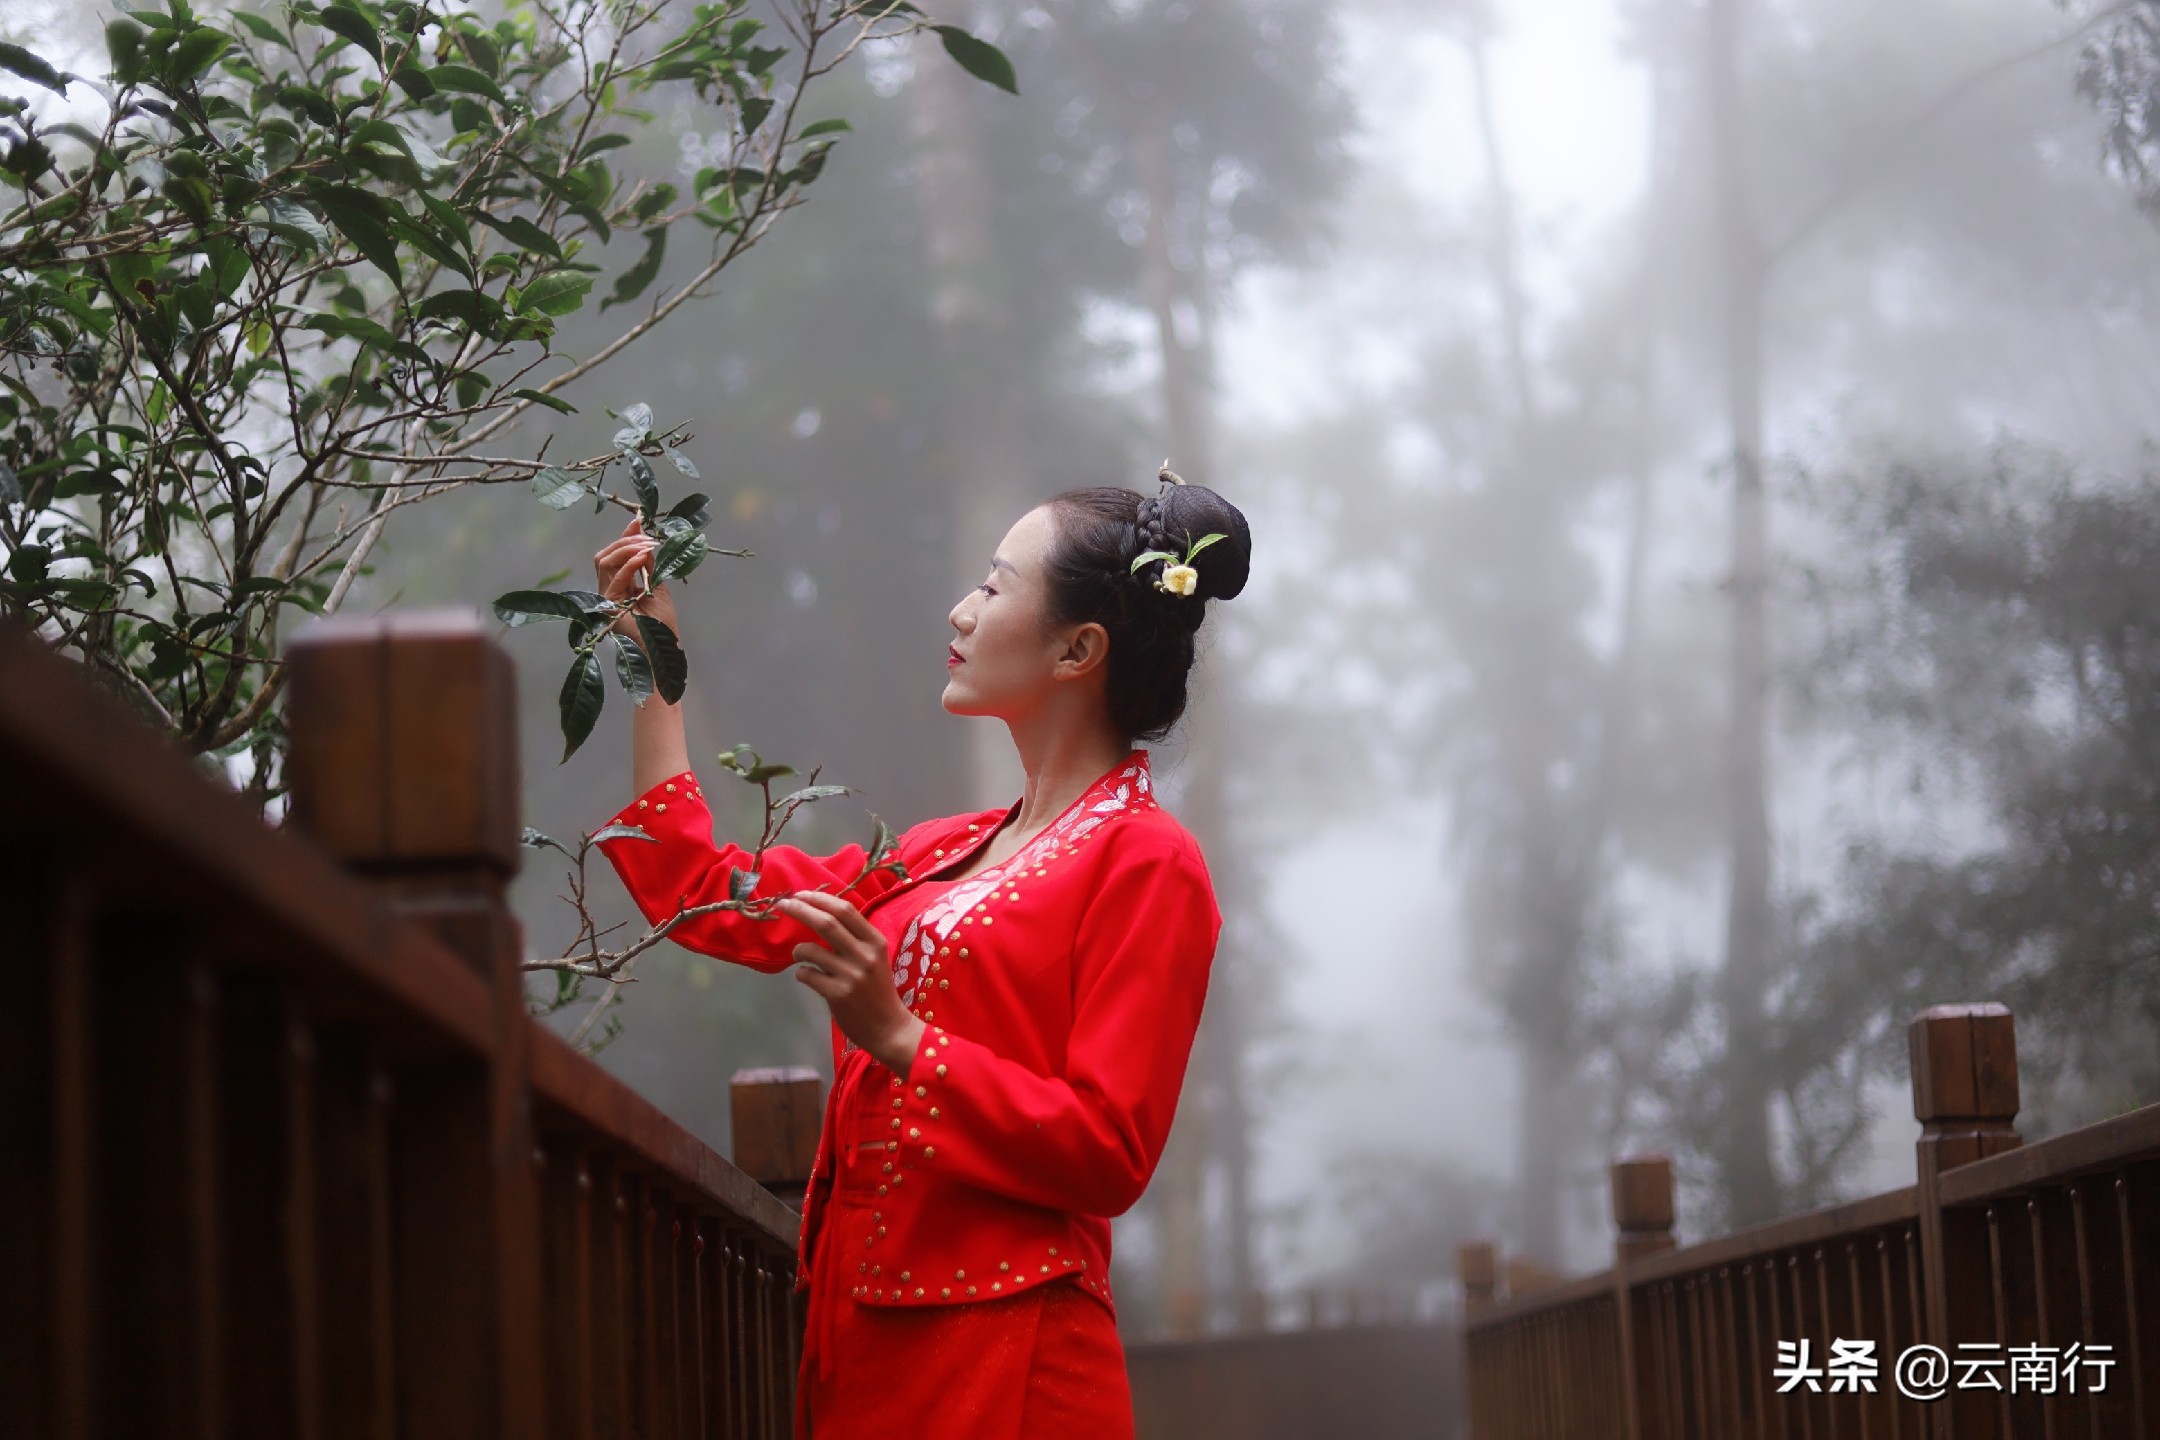 微电影《茶舞》预告片发布 展现自然与文化融合画卷